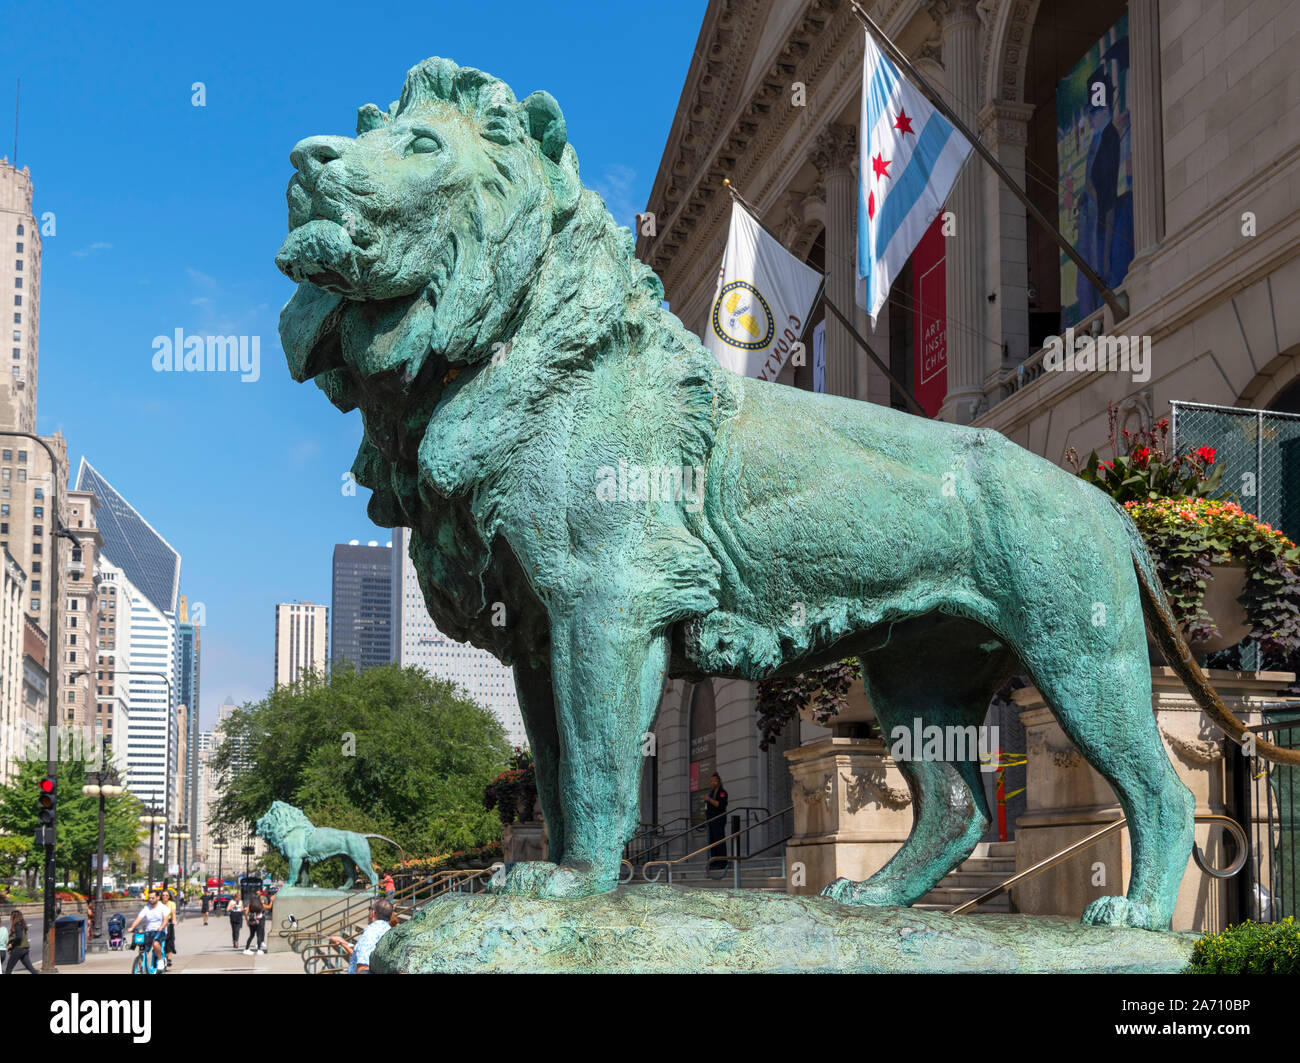 Statue des Löwen außerhalb des Art Institute of Chicago am Michigan Avenue, Chicago, Illinois, USA Stockfoto